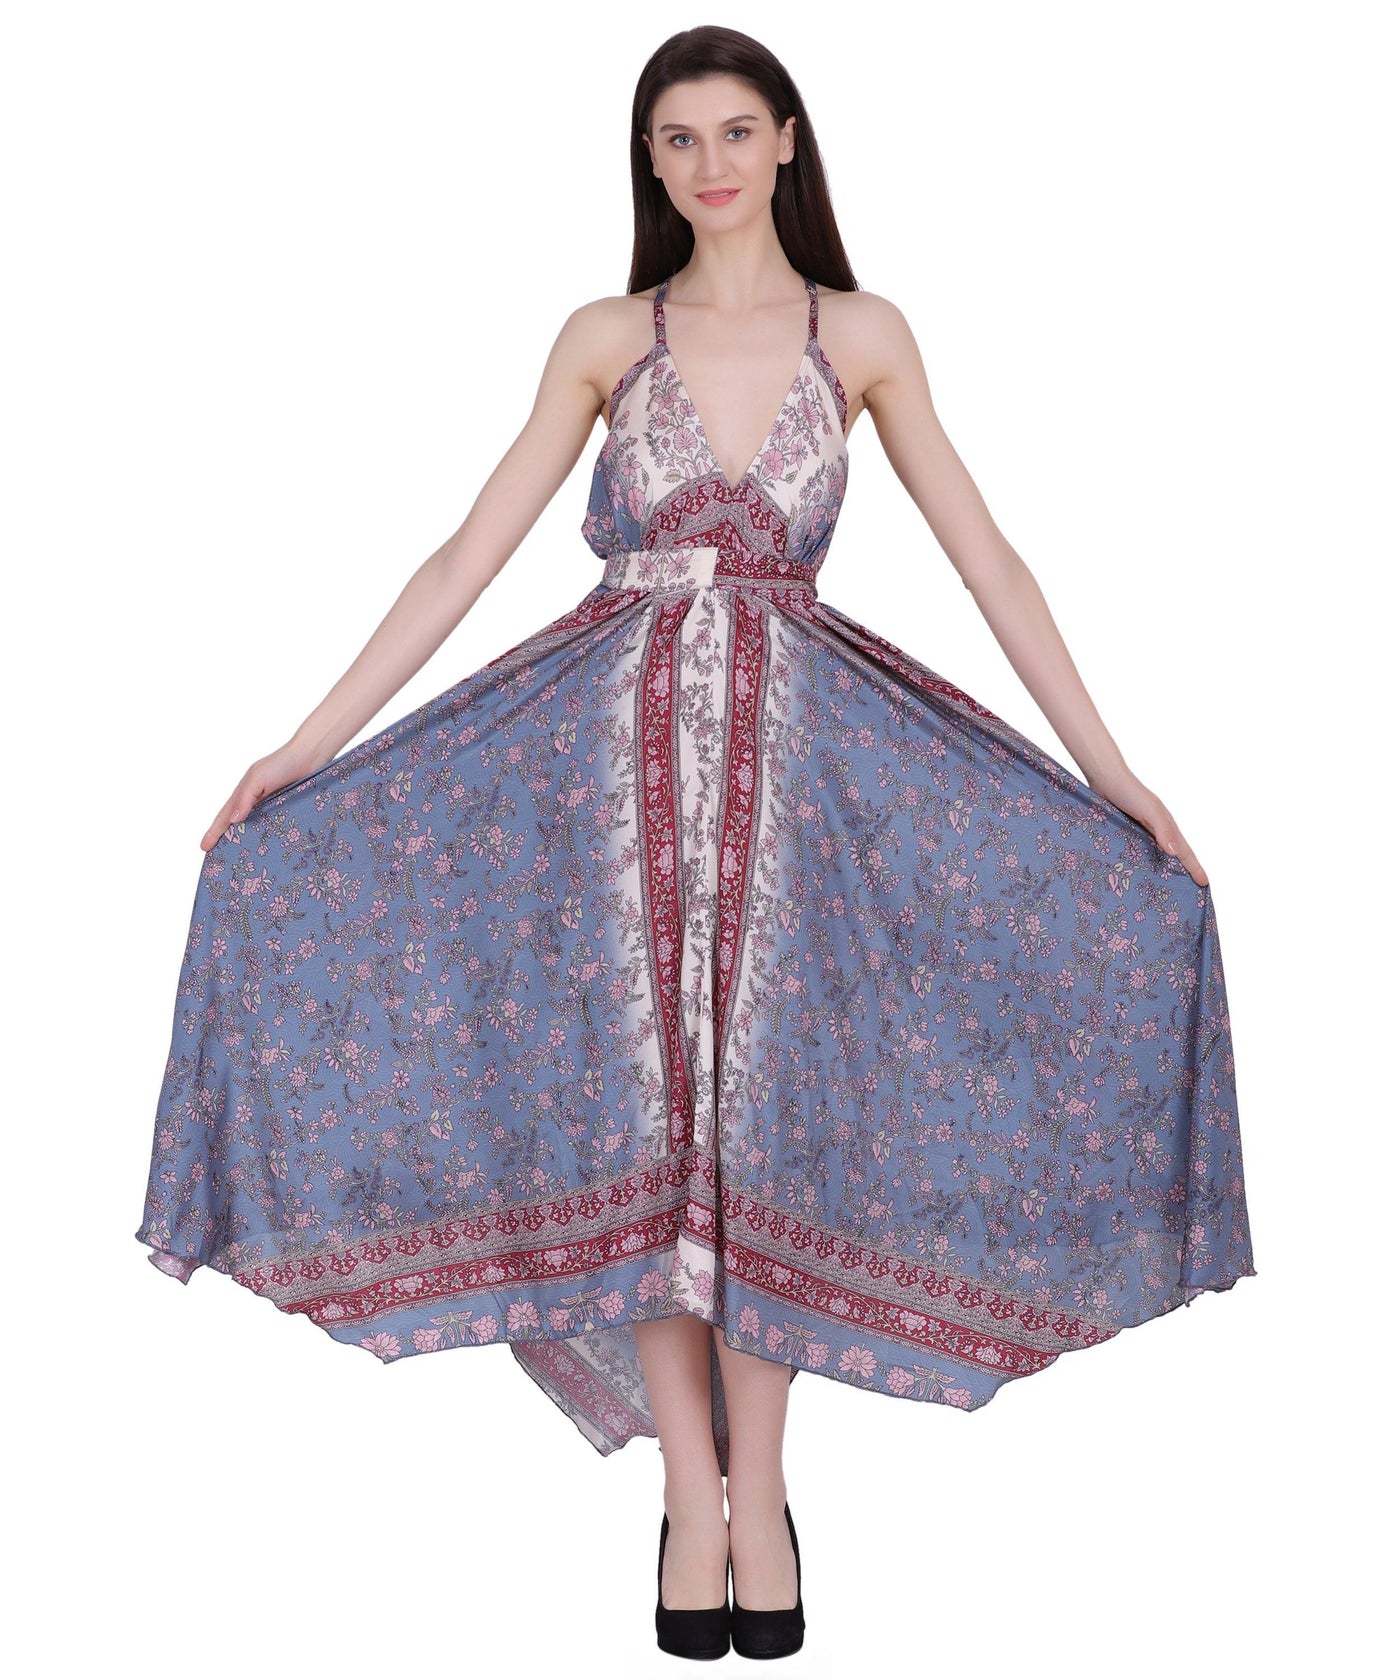 Printed Silk Dress AB-12009  - Advance Apparels Inc